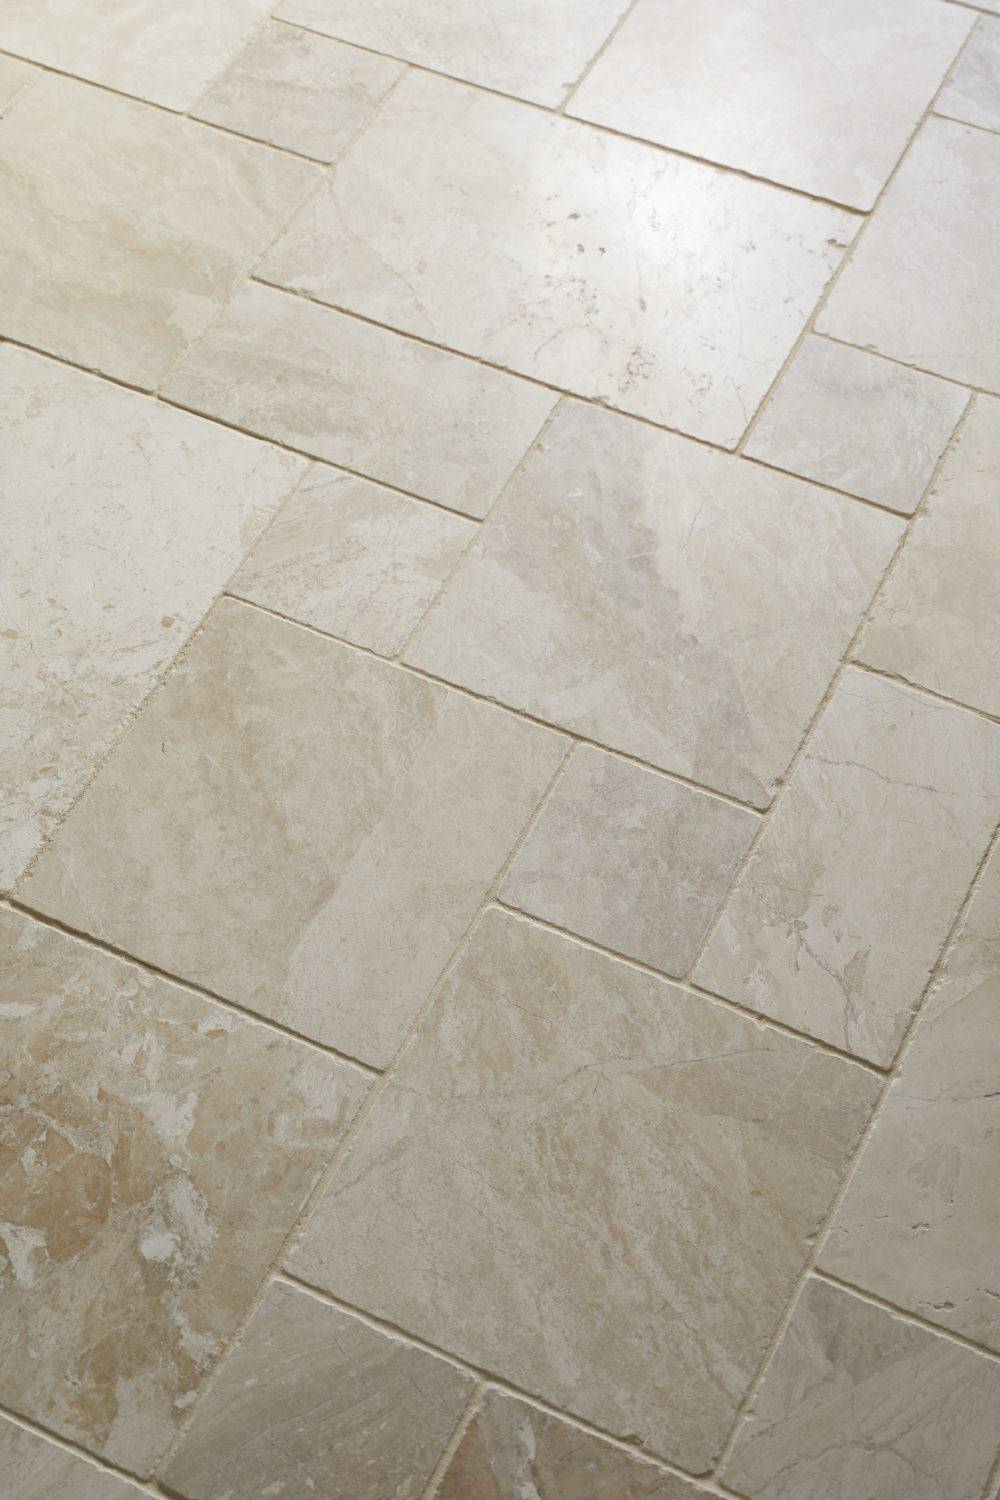 Beige marble mosaic tile floor